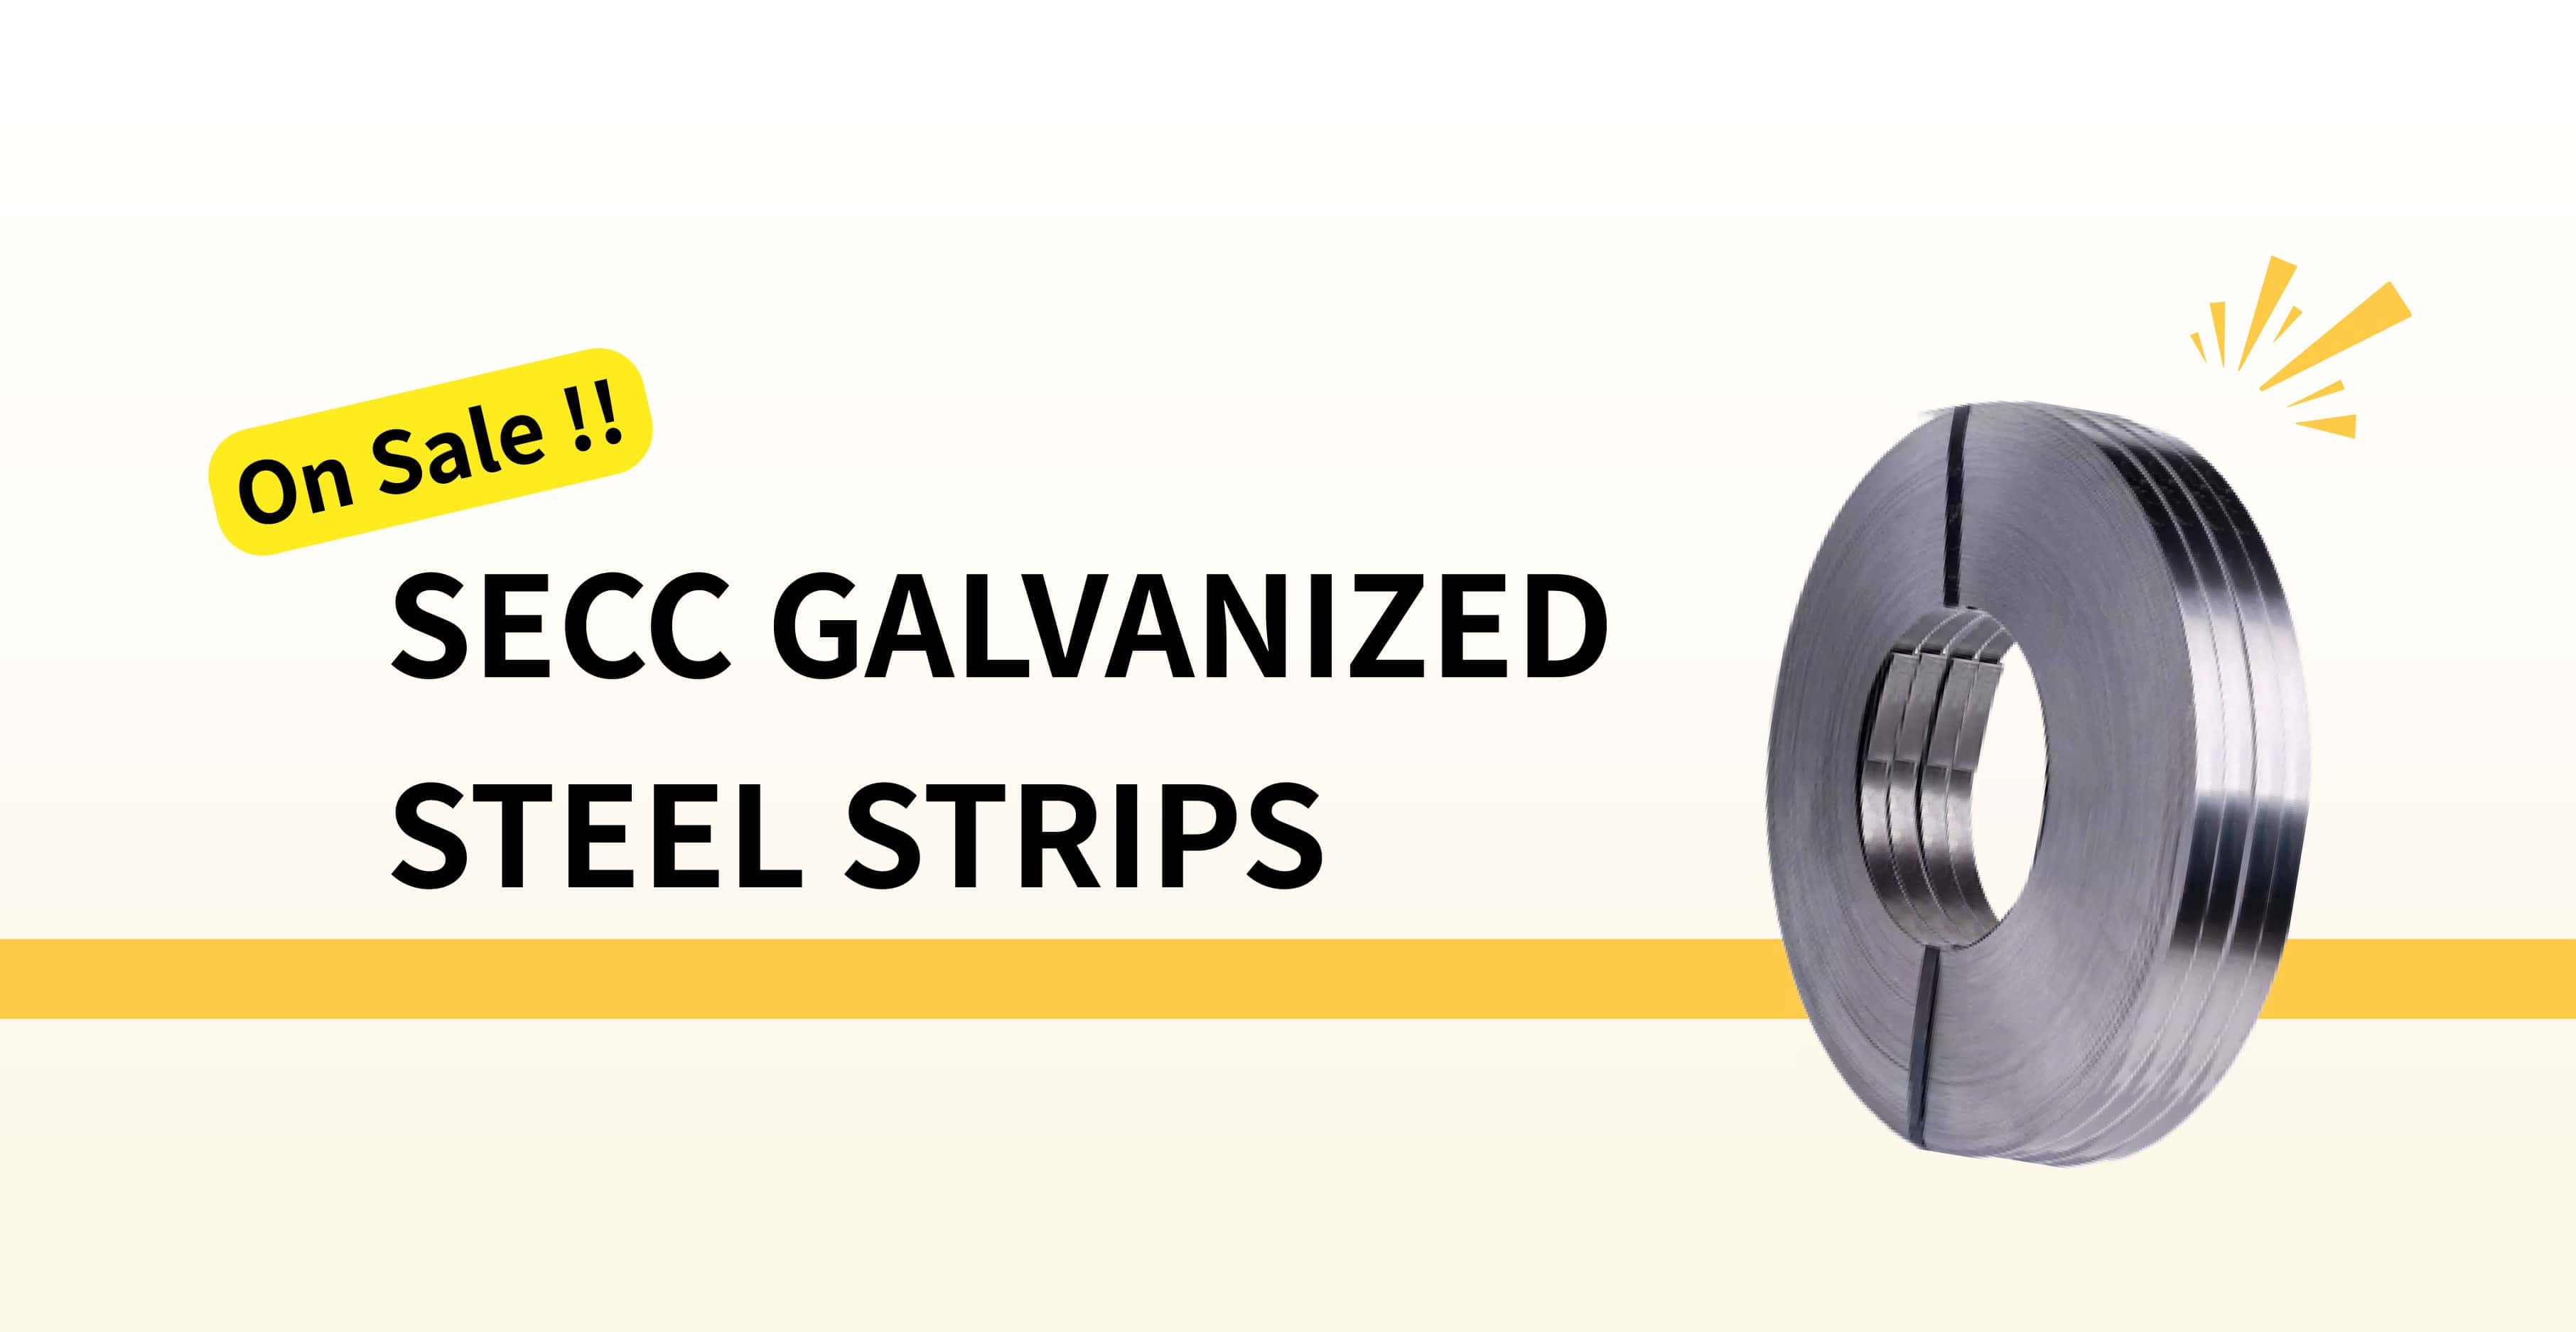 SECC galvanized steel strips